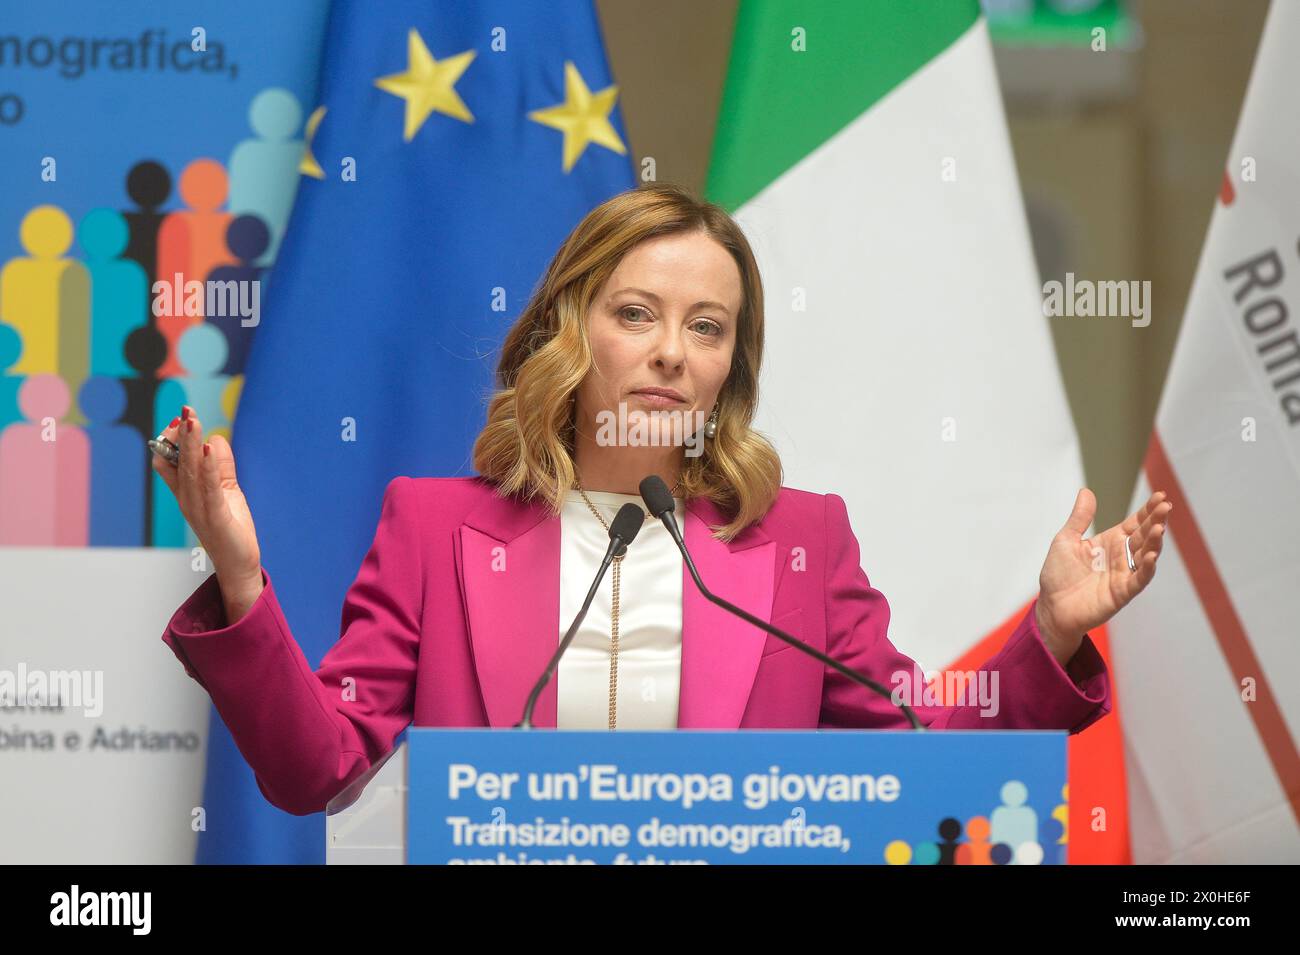 Roma, Italia. 12 de abril de 2024: La primera ministra Giorgia Meloni participa en la conferencia 'Por una Europa joven' Foto © Stefano Carofei/Sintesi/Alamy Live News Foto de stock